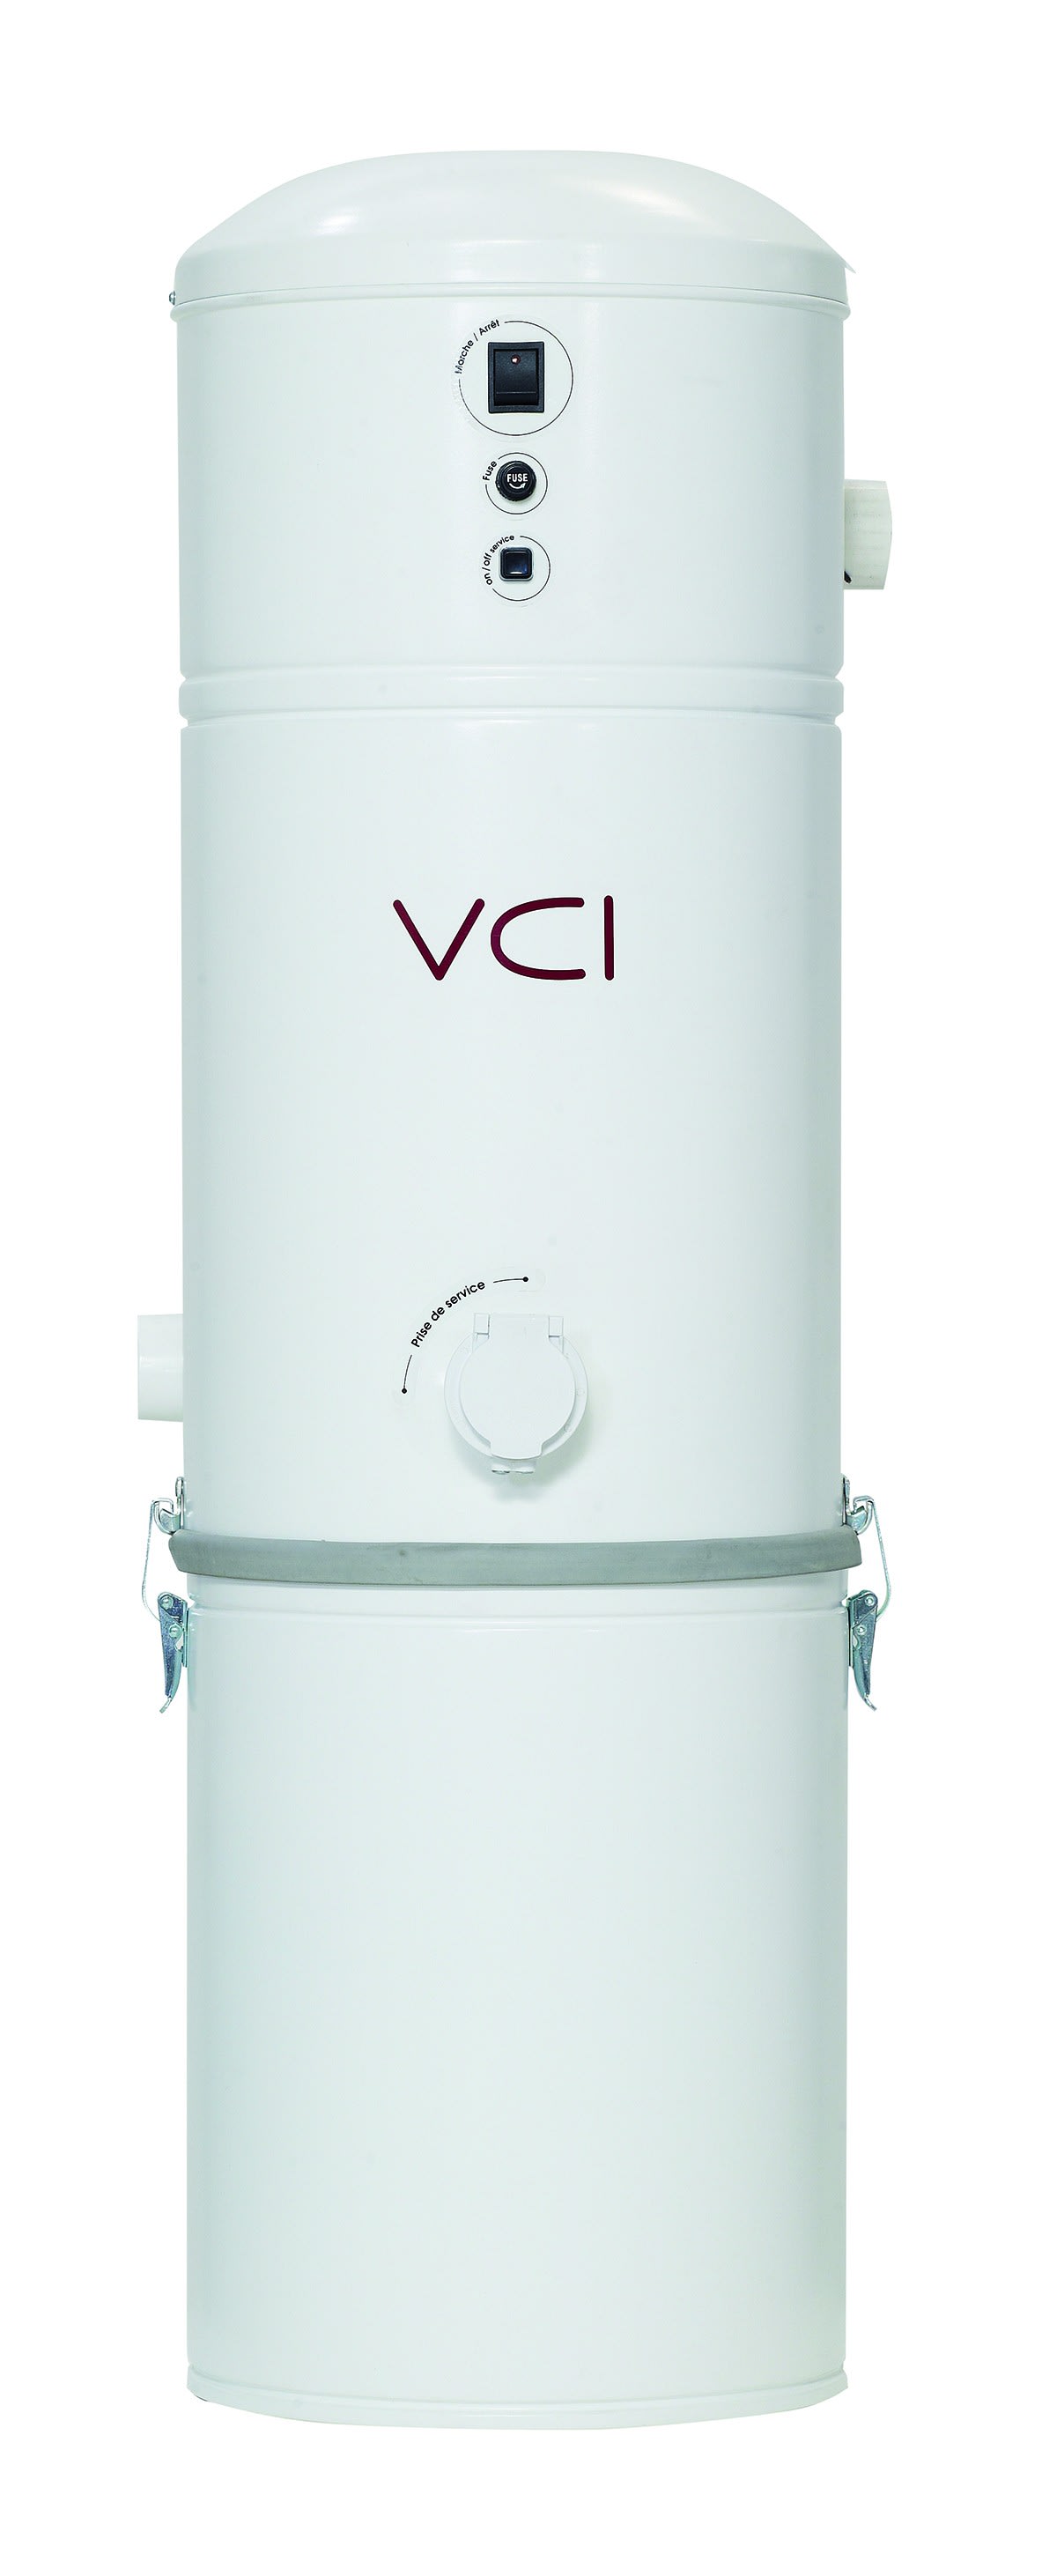 VCI - Centrale d'aspiration 1850W + double filtre